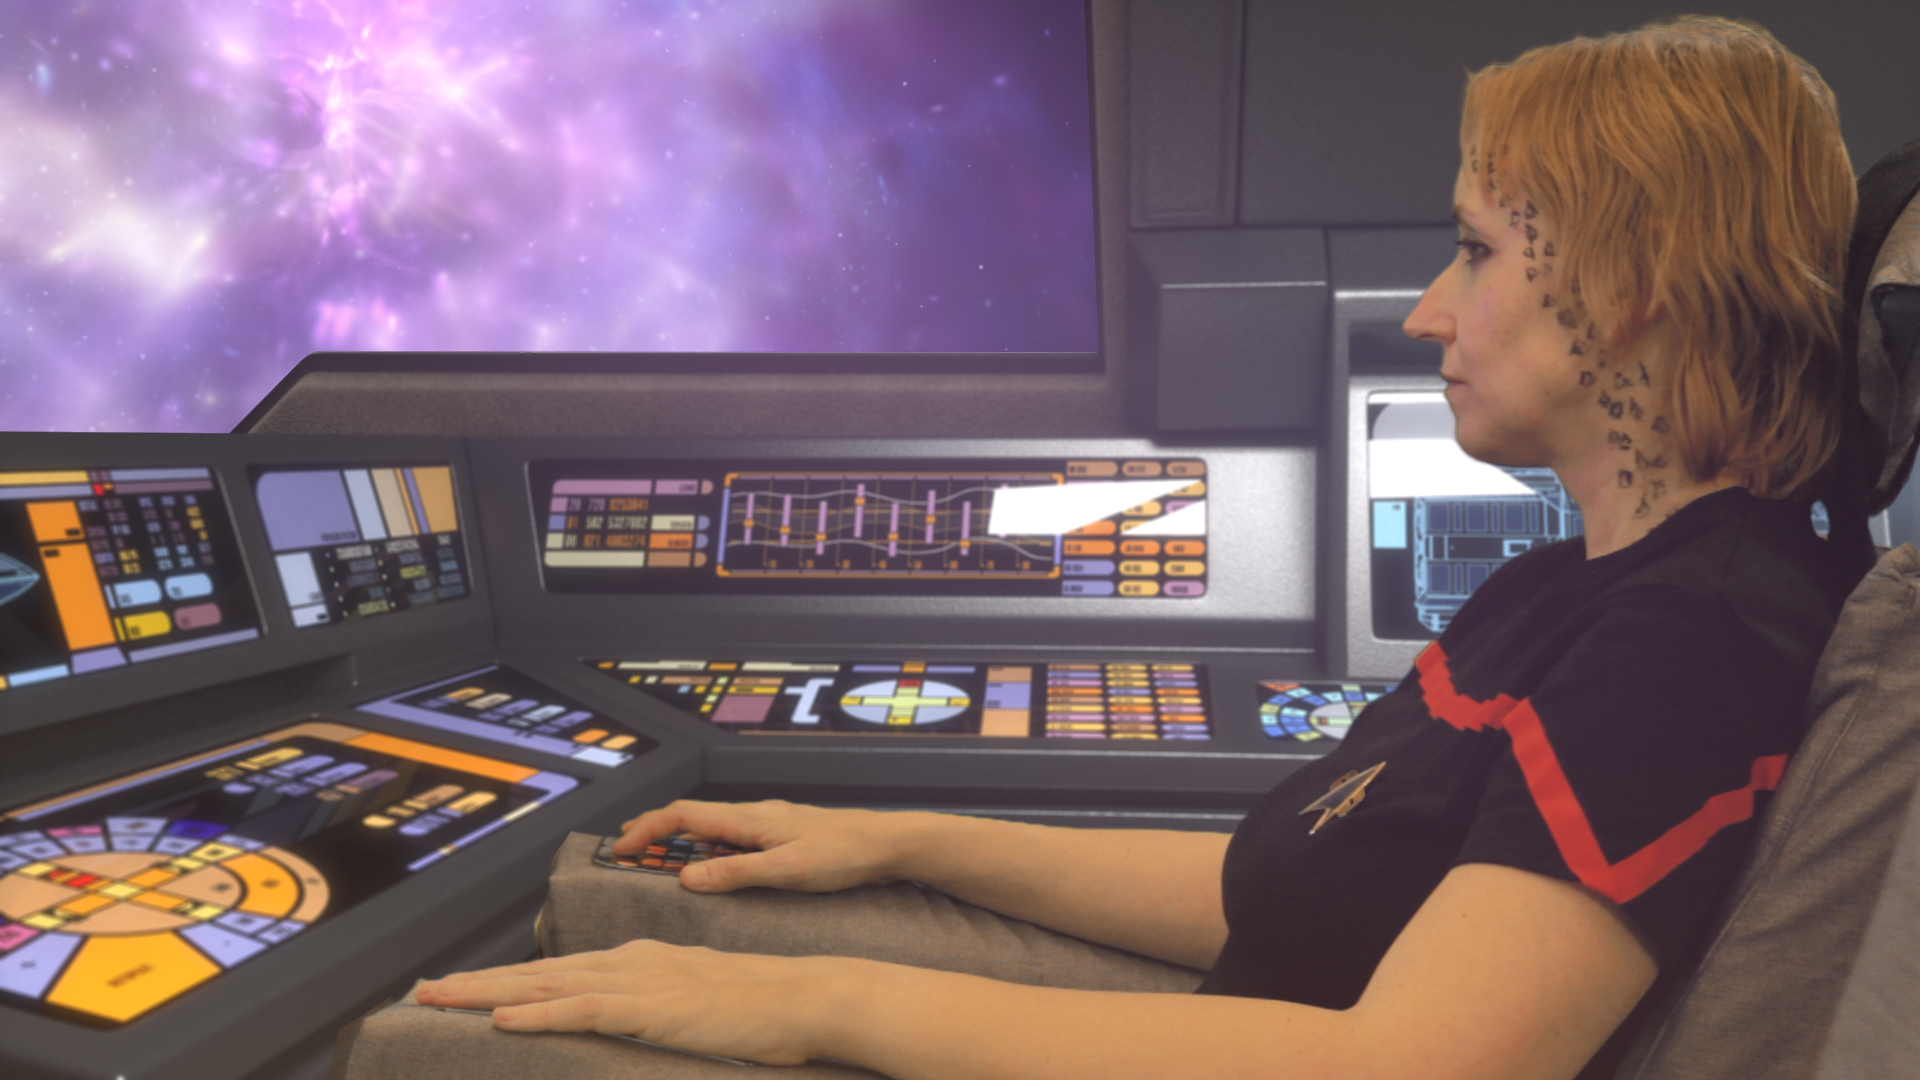 Talisa Ren v raketoplánu obdivuje krásy vesmíru.